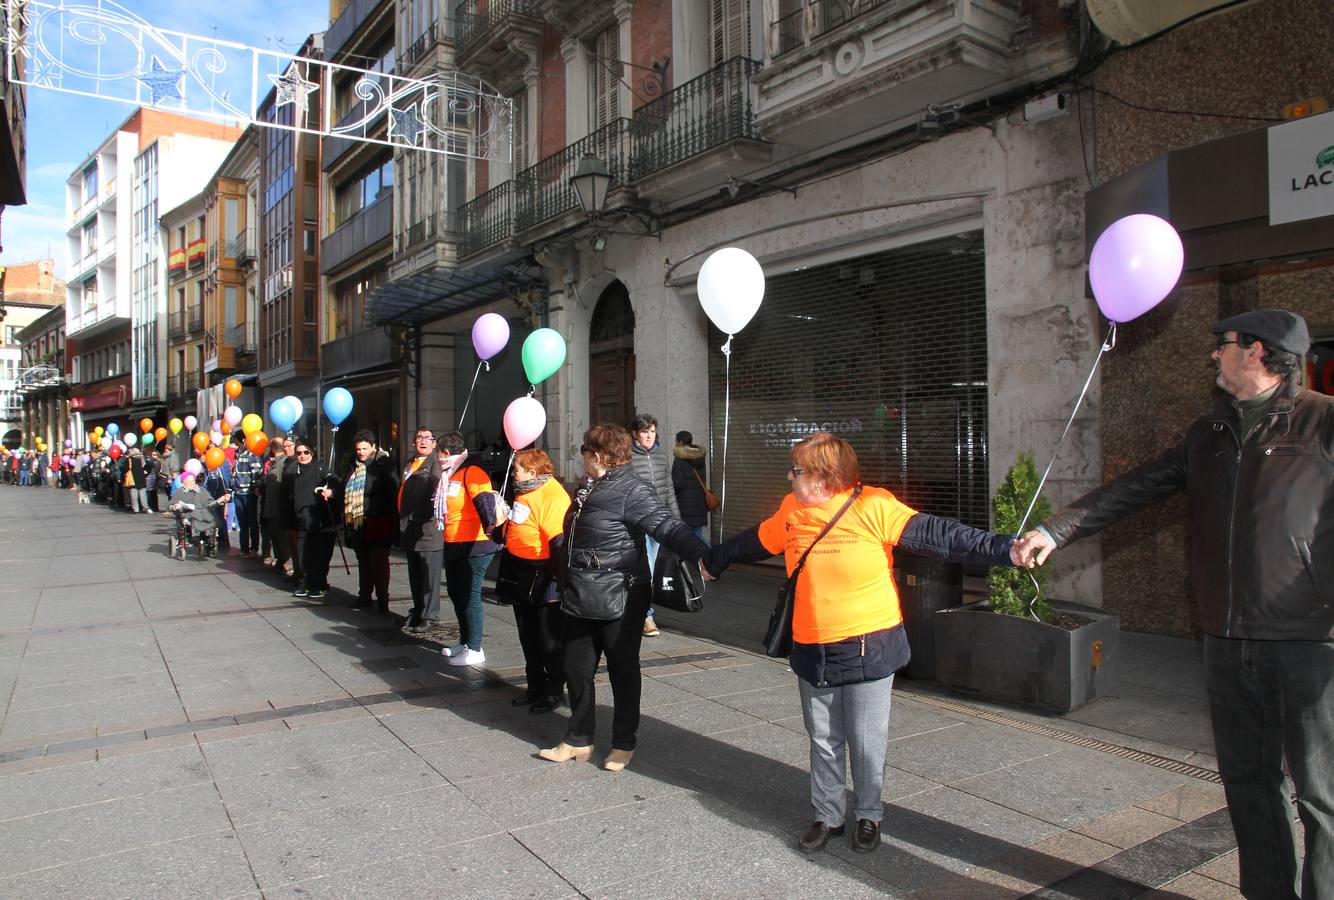 Cadena humana en el Día de la Discapacidad en Palencia